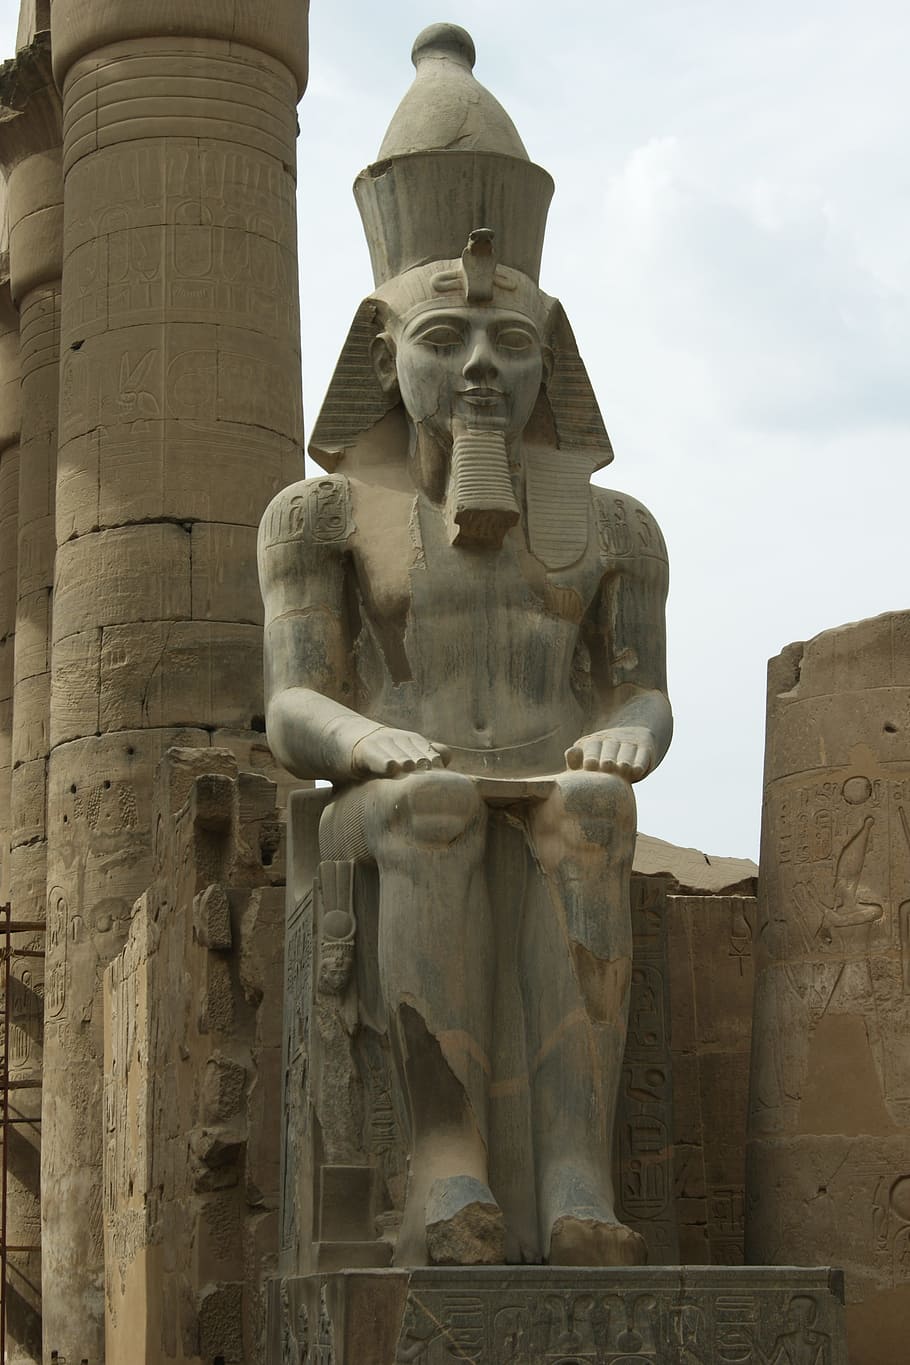 룩소르, 이집트, 카르 나크, 조각, 예술과 공예, 동상, 인간의 표현, 표현, 창의성, 남성상